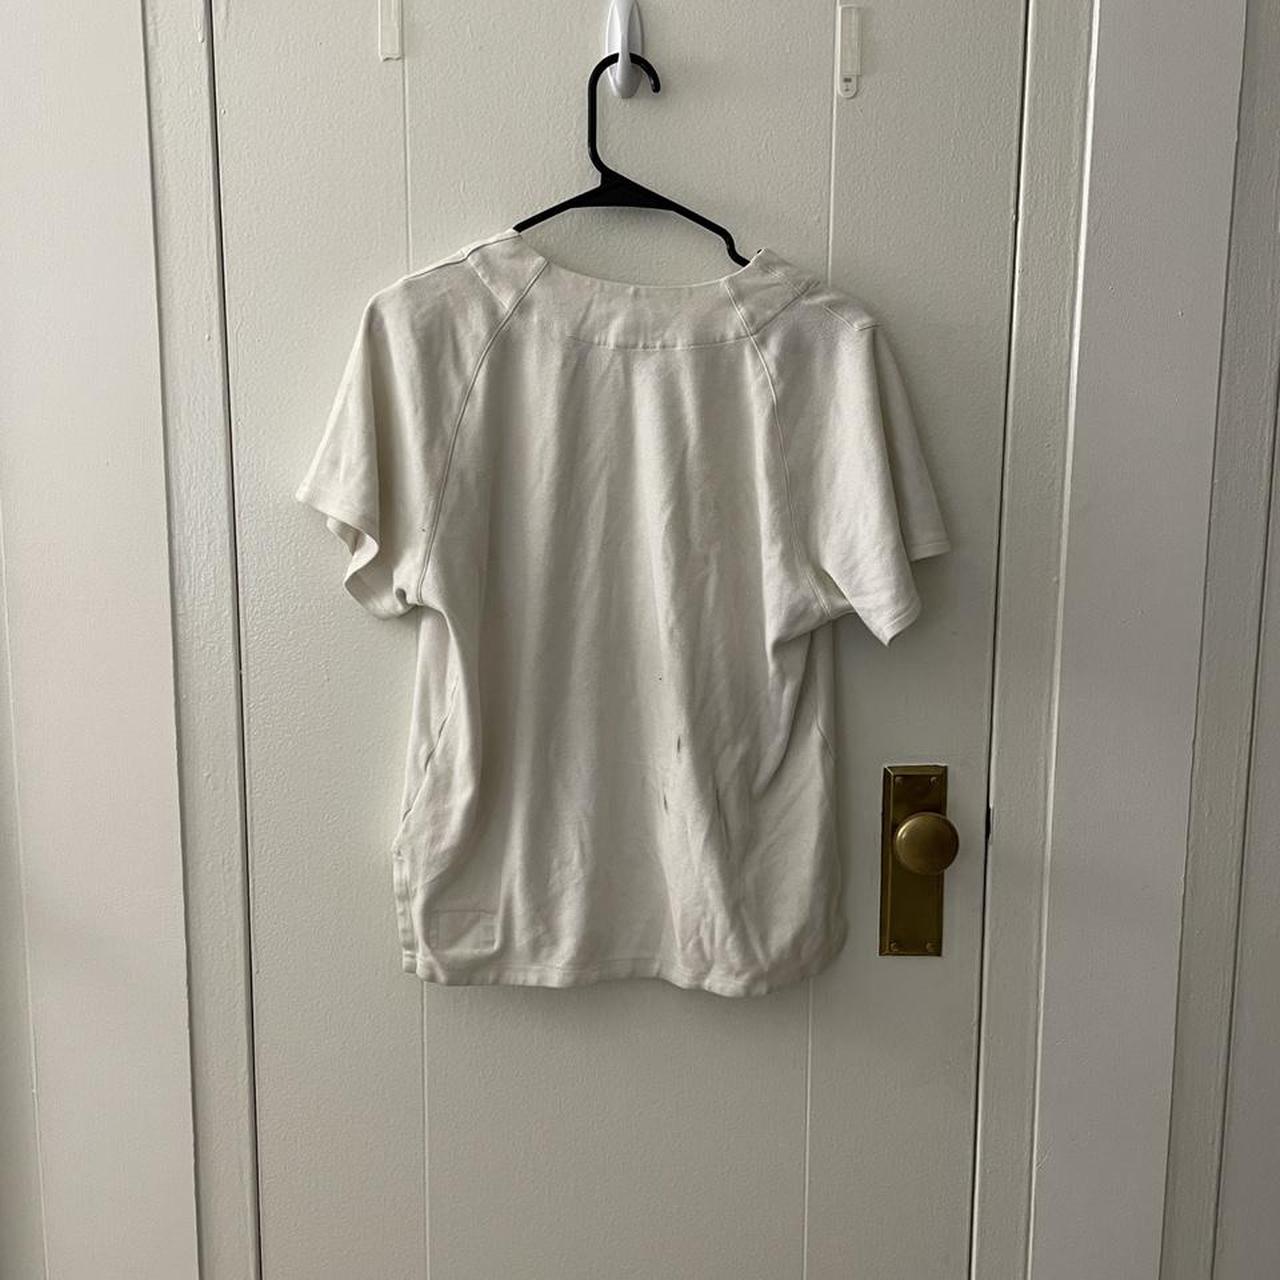 Product Image 3 - Nicholas daley white shirt
Similar to